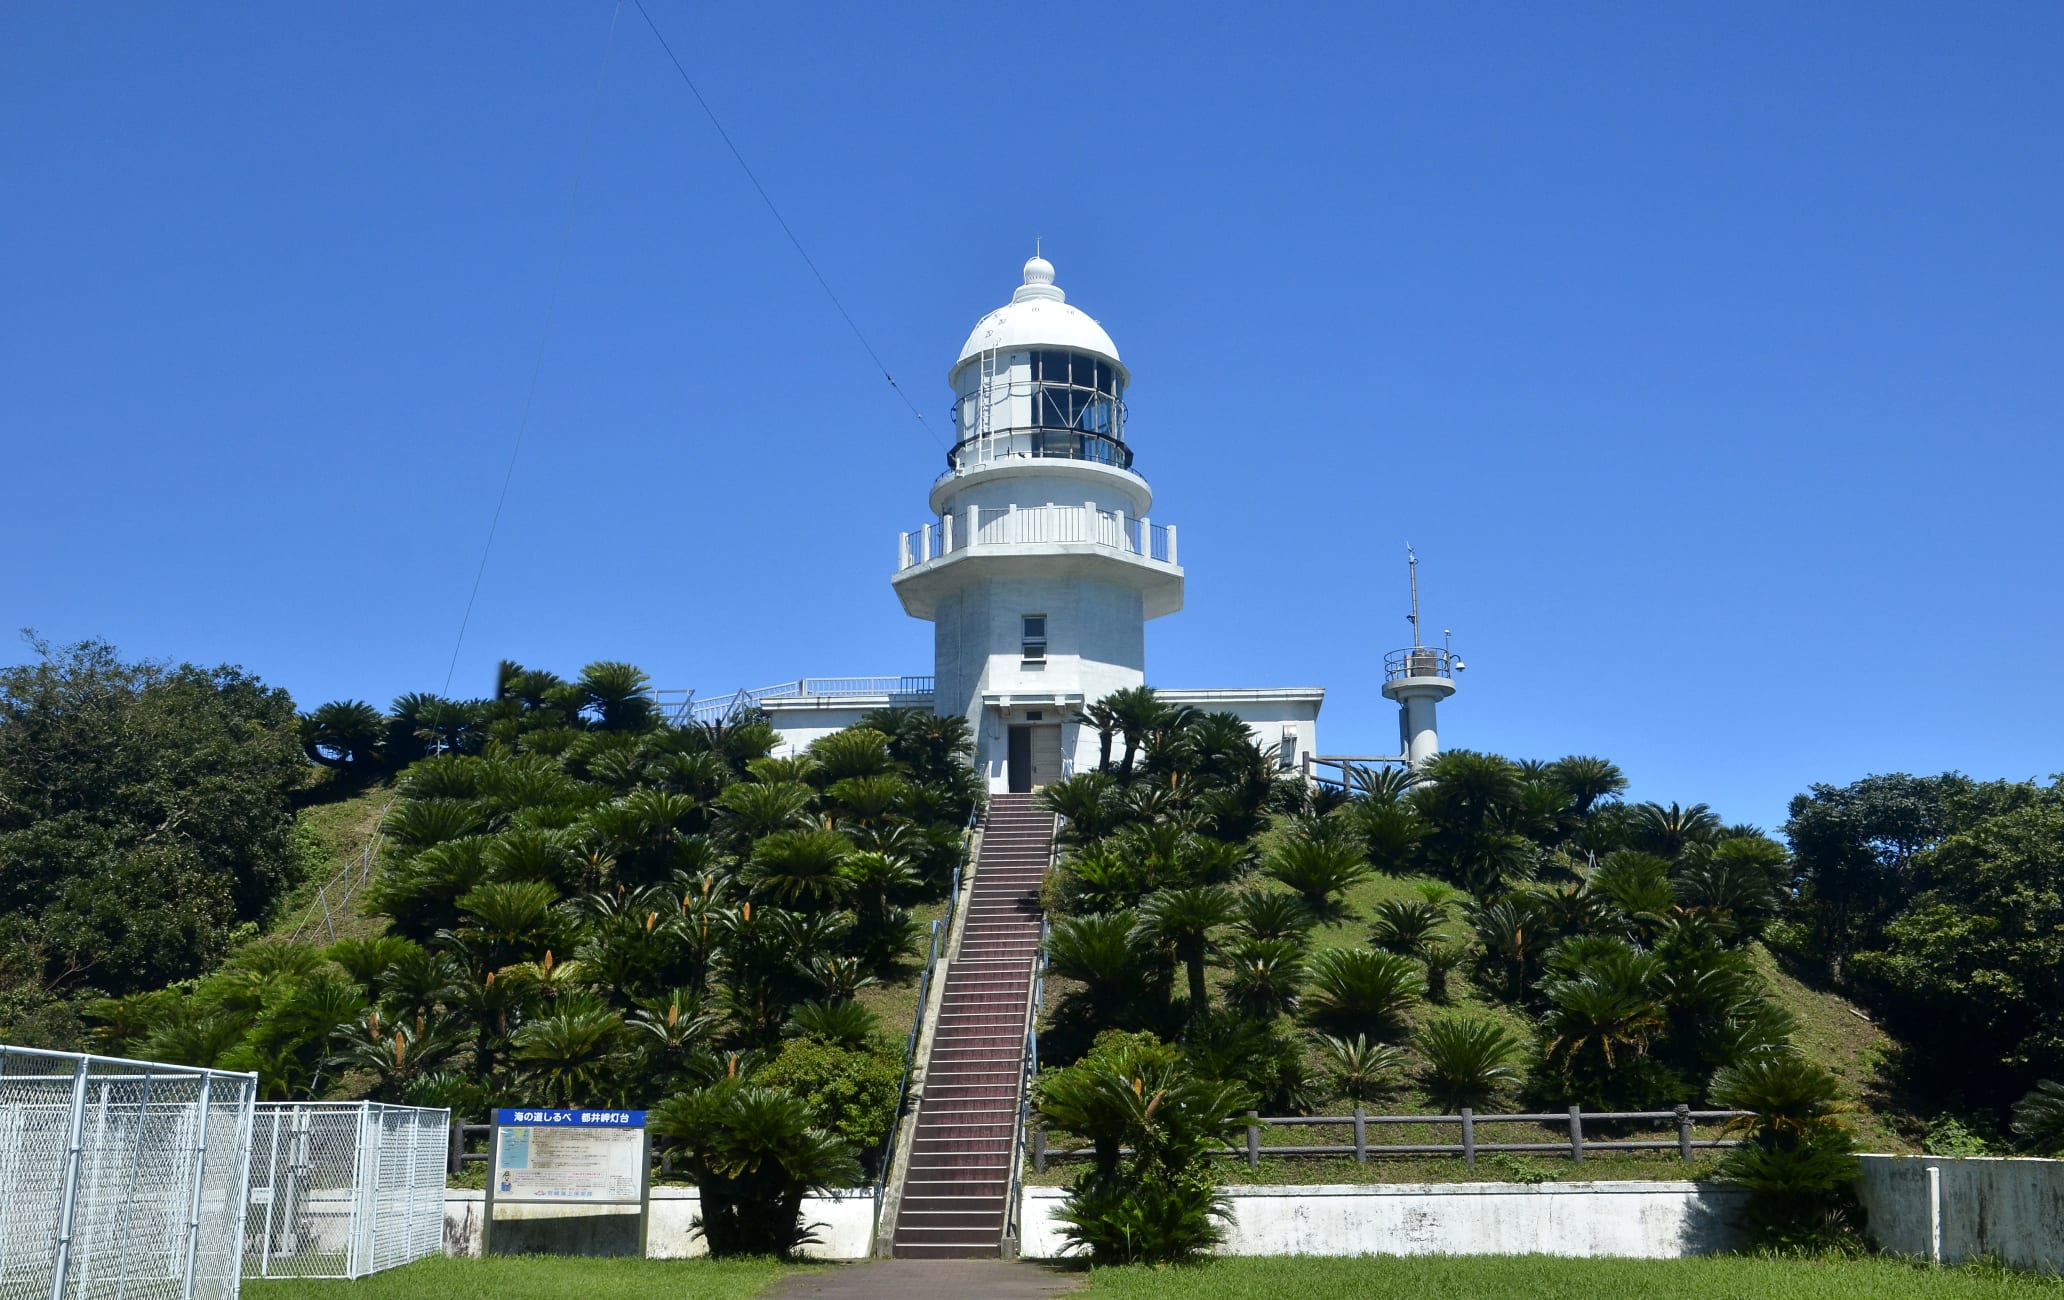 Toi misaki light house